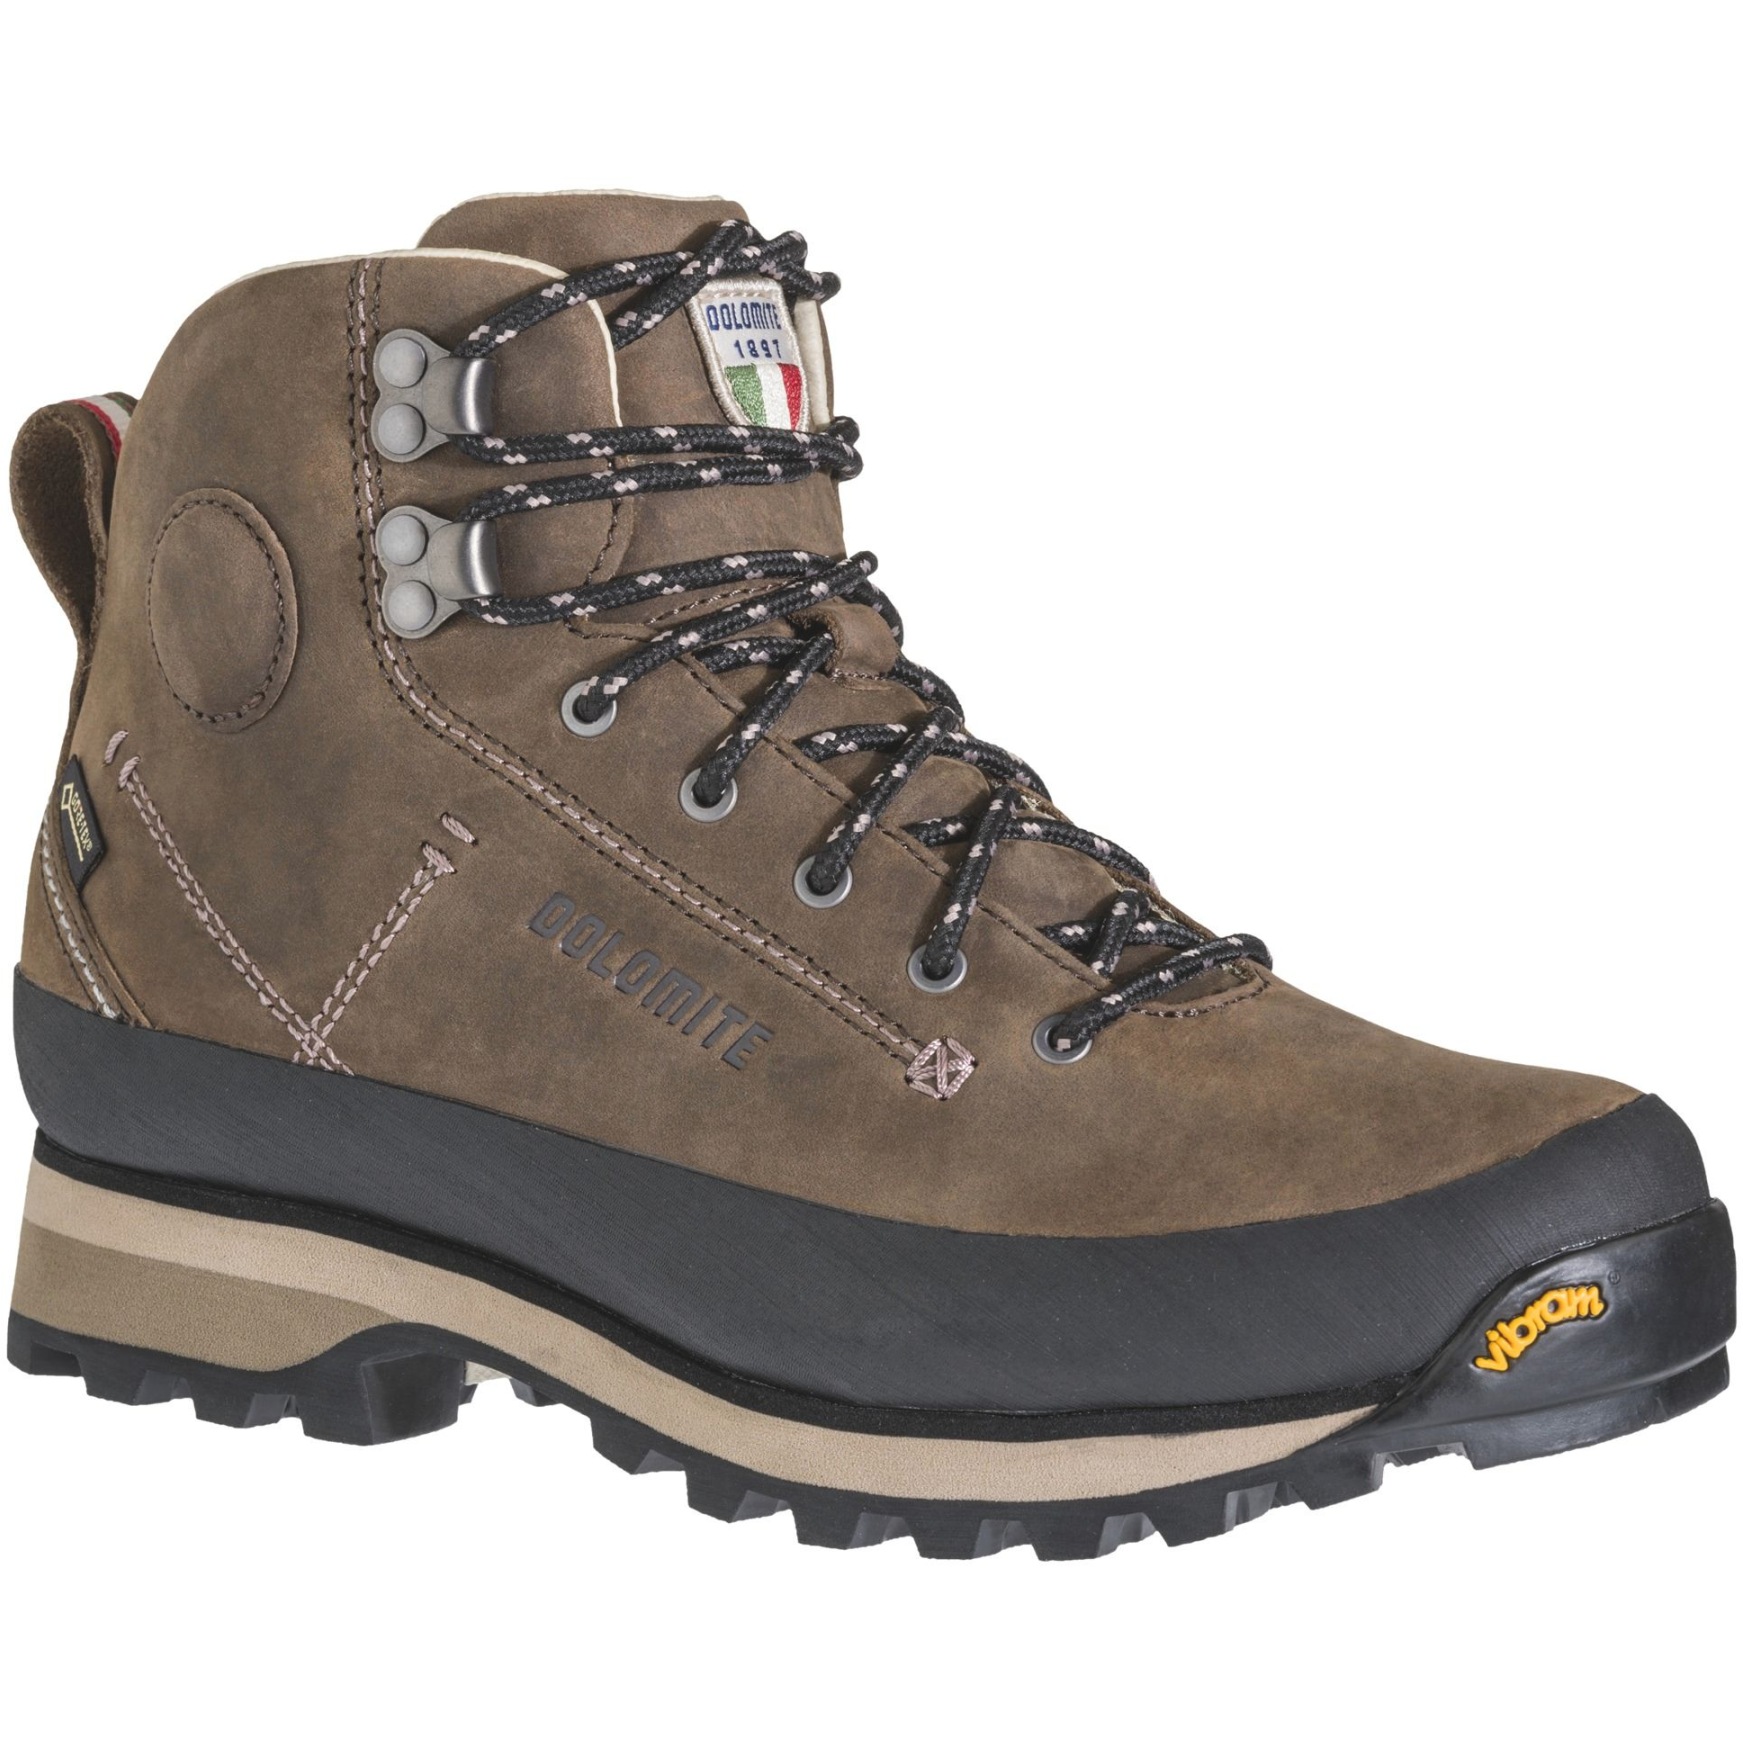 Produktbild von Dolomite 54 Trek GORE-TEX Schuhe Damen - dark brown